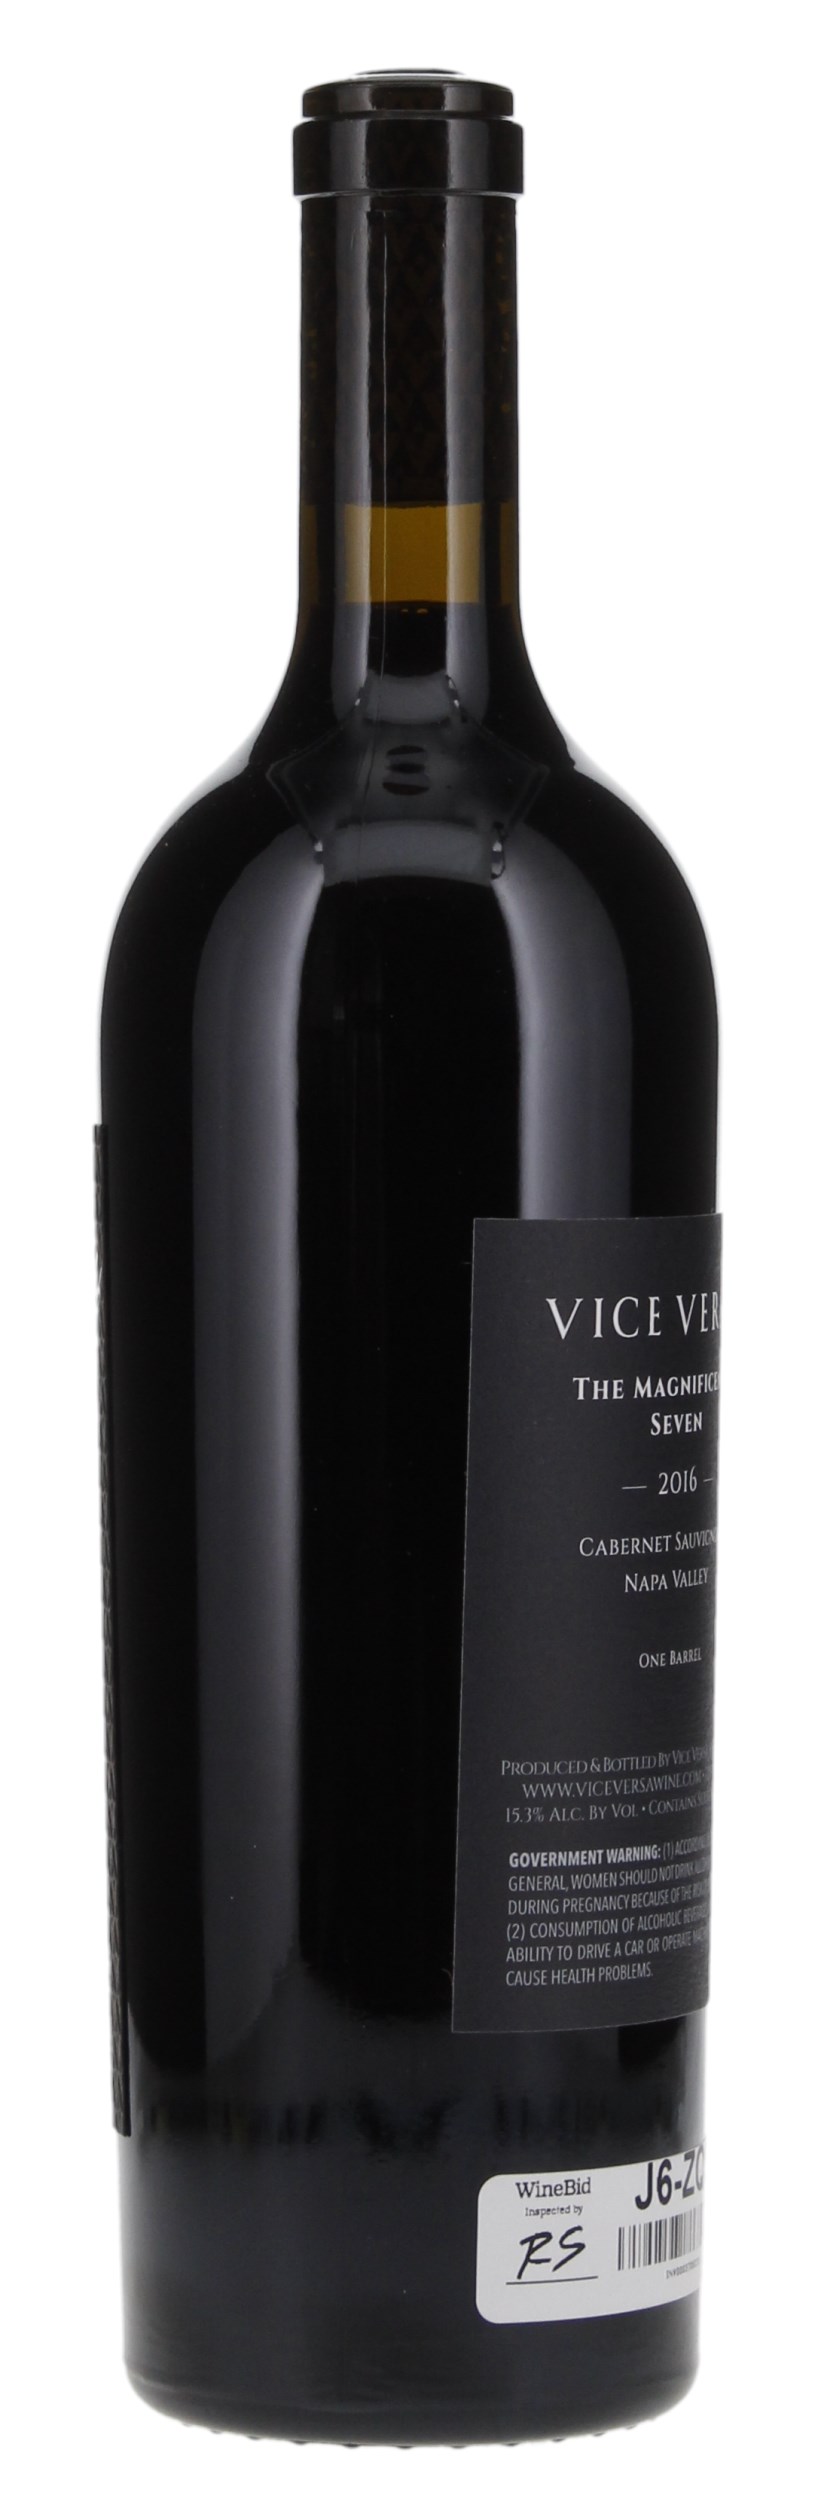 2016 Vice Versa The Magnificent Seven Cabernet Sauvignon, 750ml